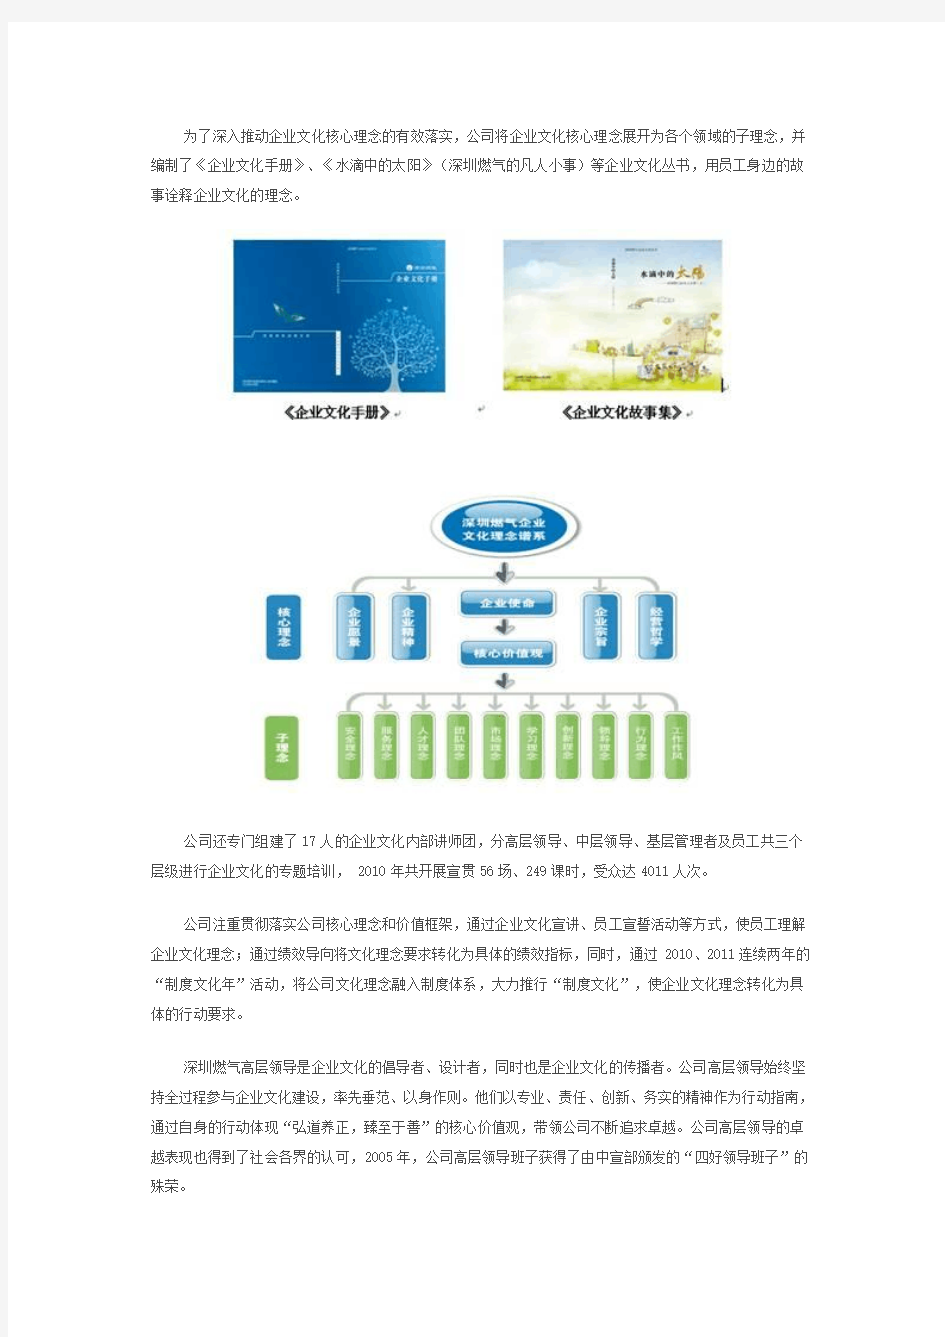 深圳市燃气集团股份有限公司案例